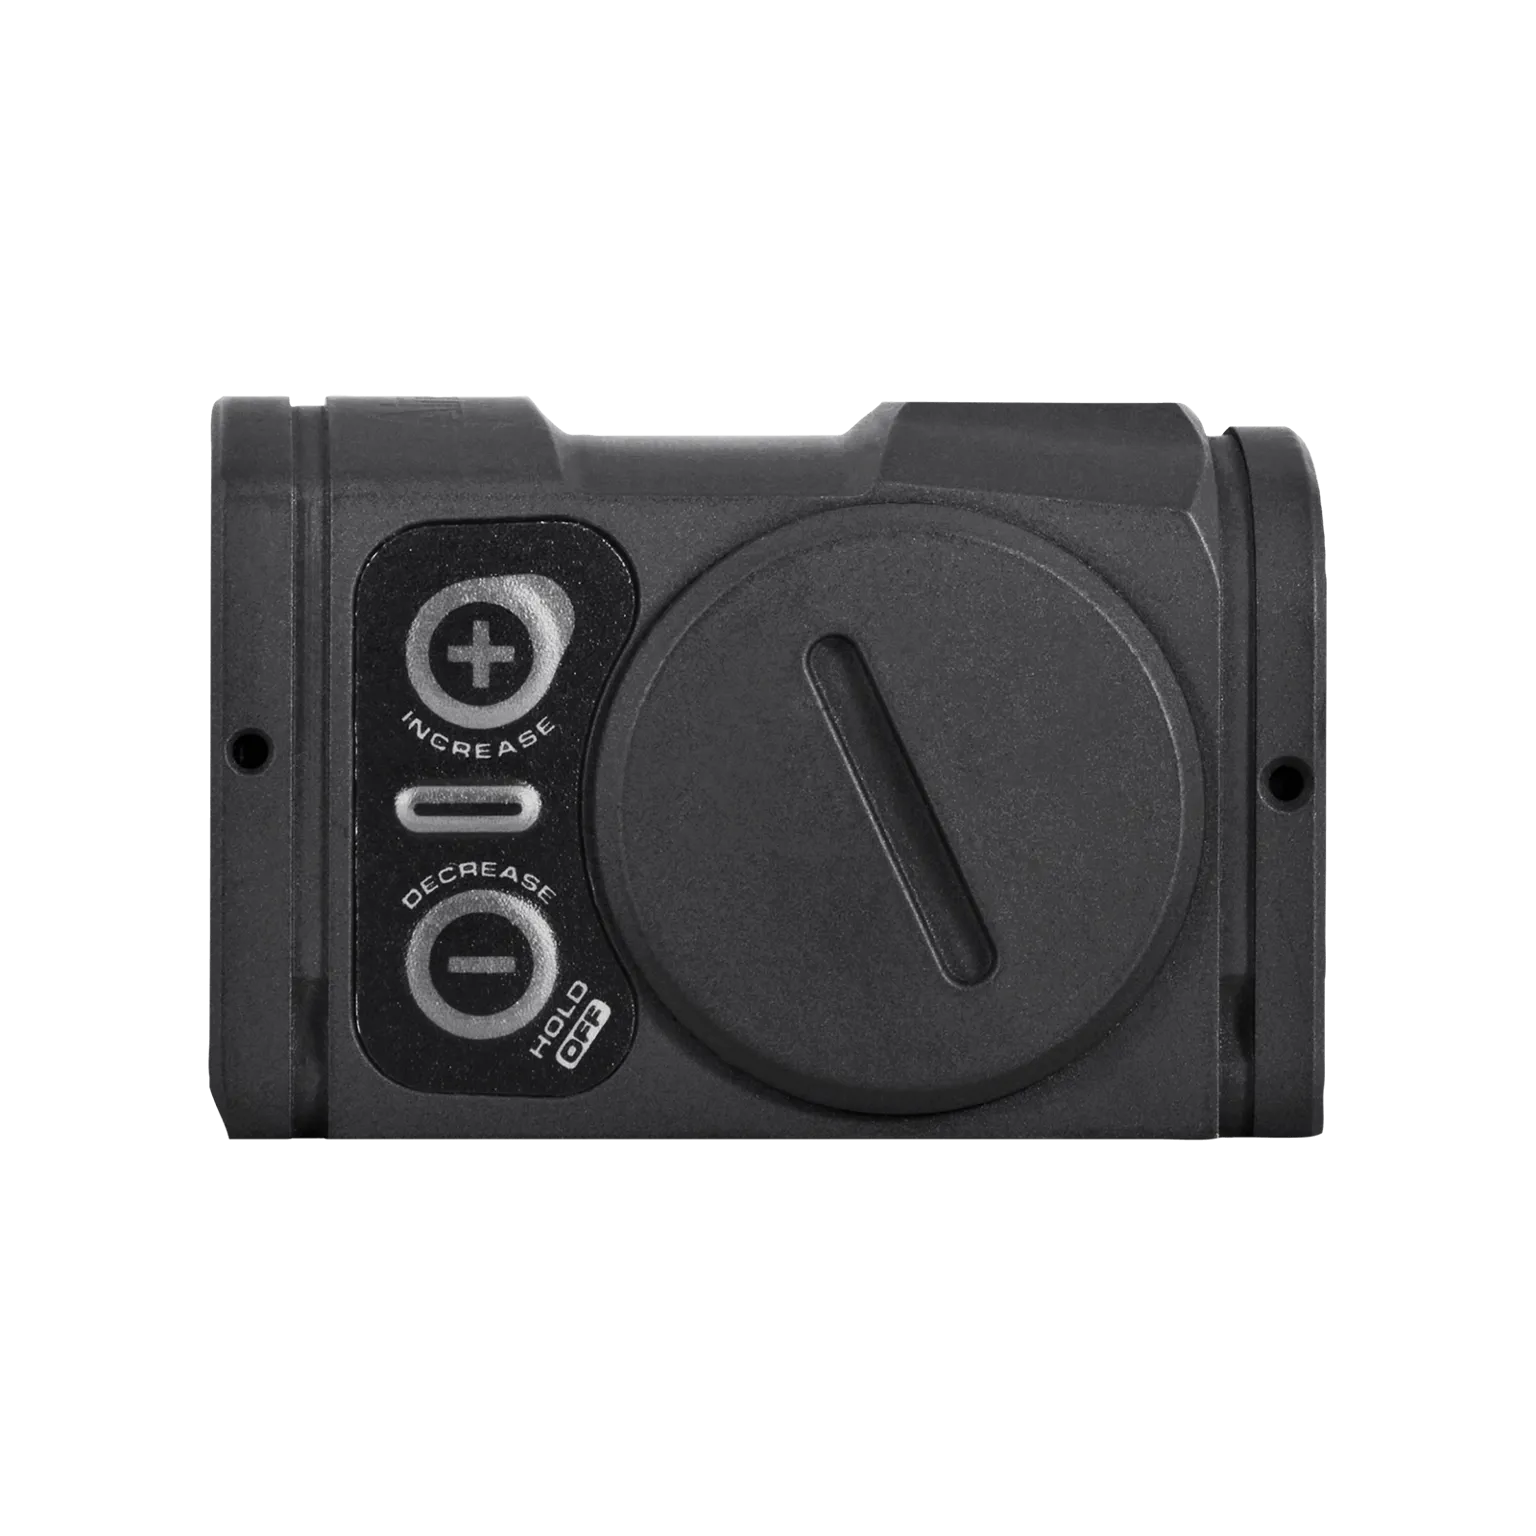 Acro P-2™ Sniper Grey 3.5 MOA - Viseur point rouge avec interface Acro™ intégrée - 4